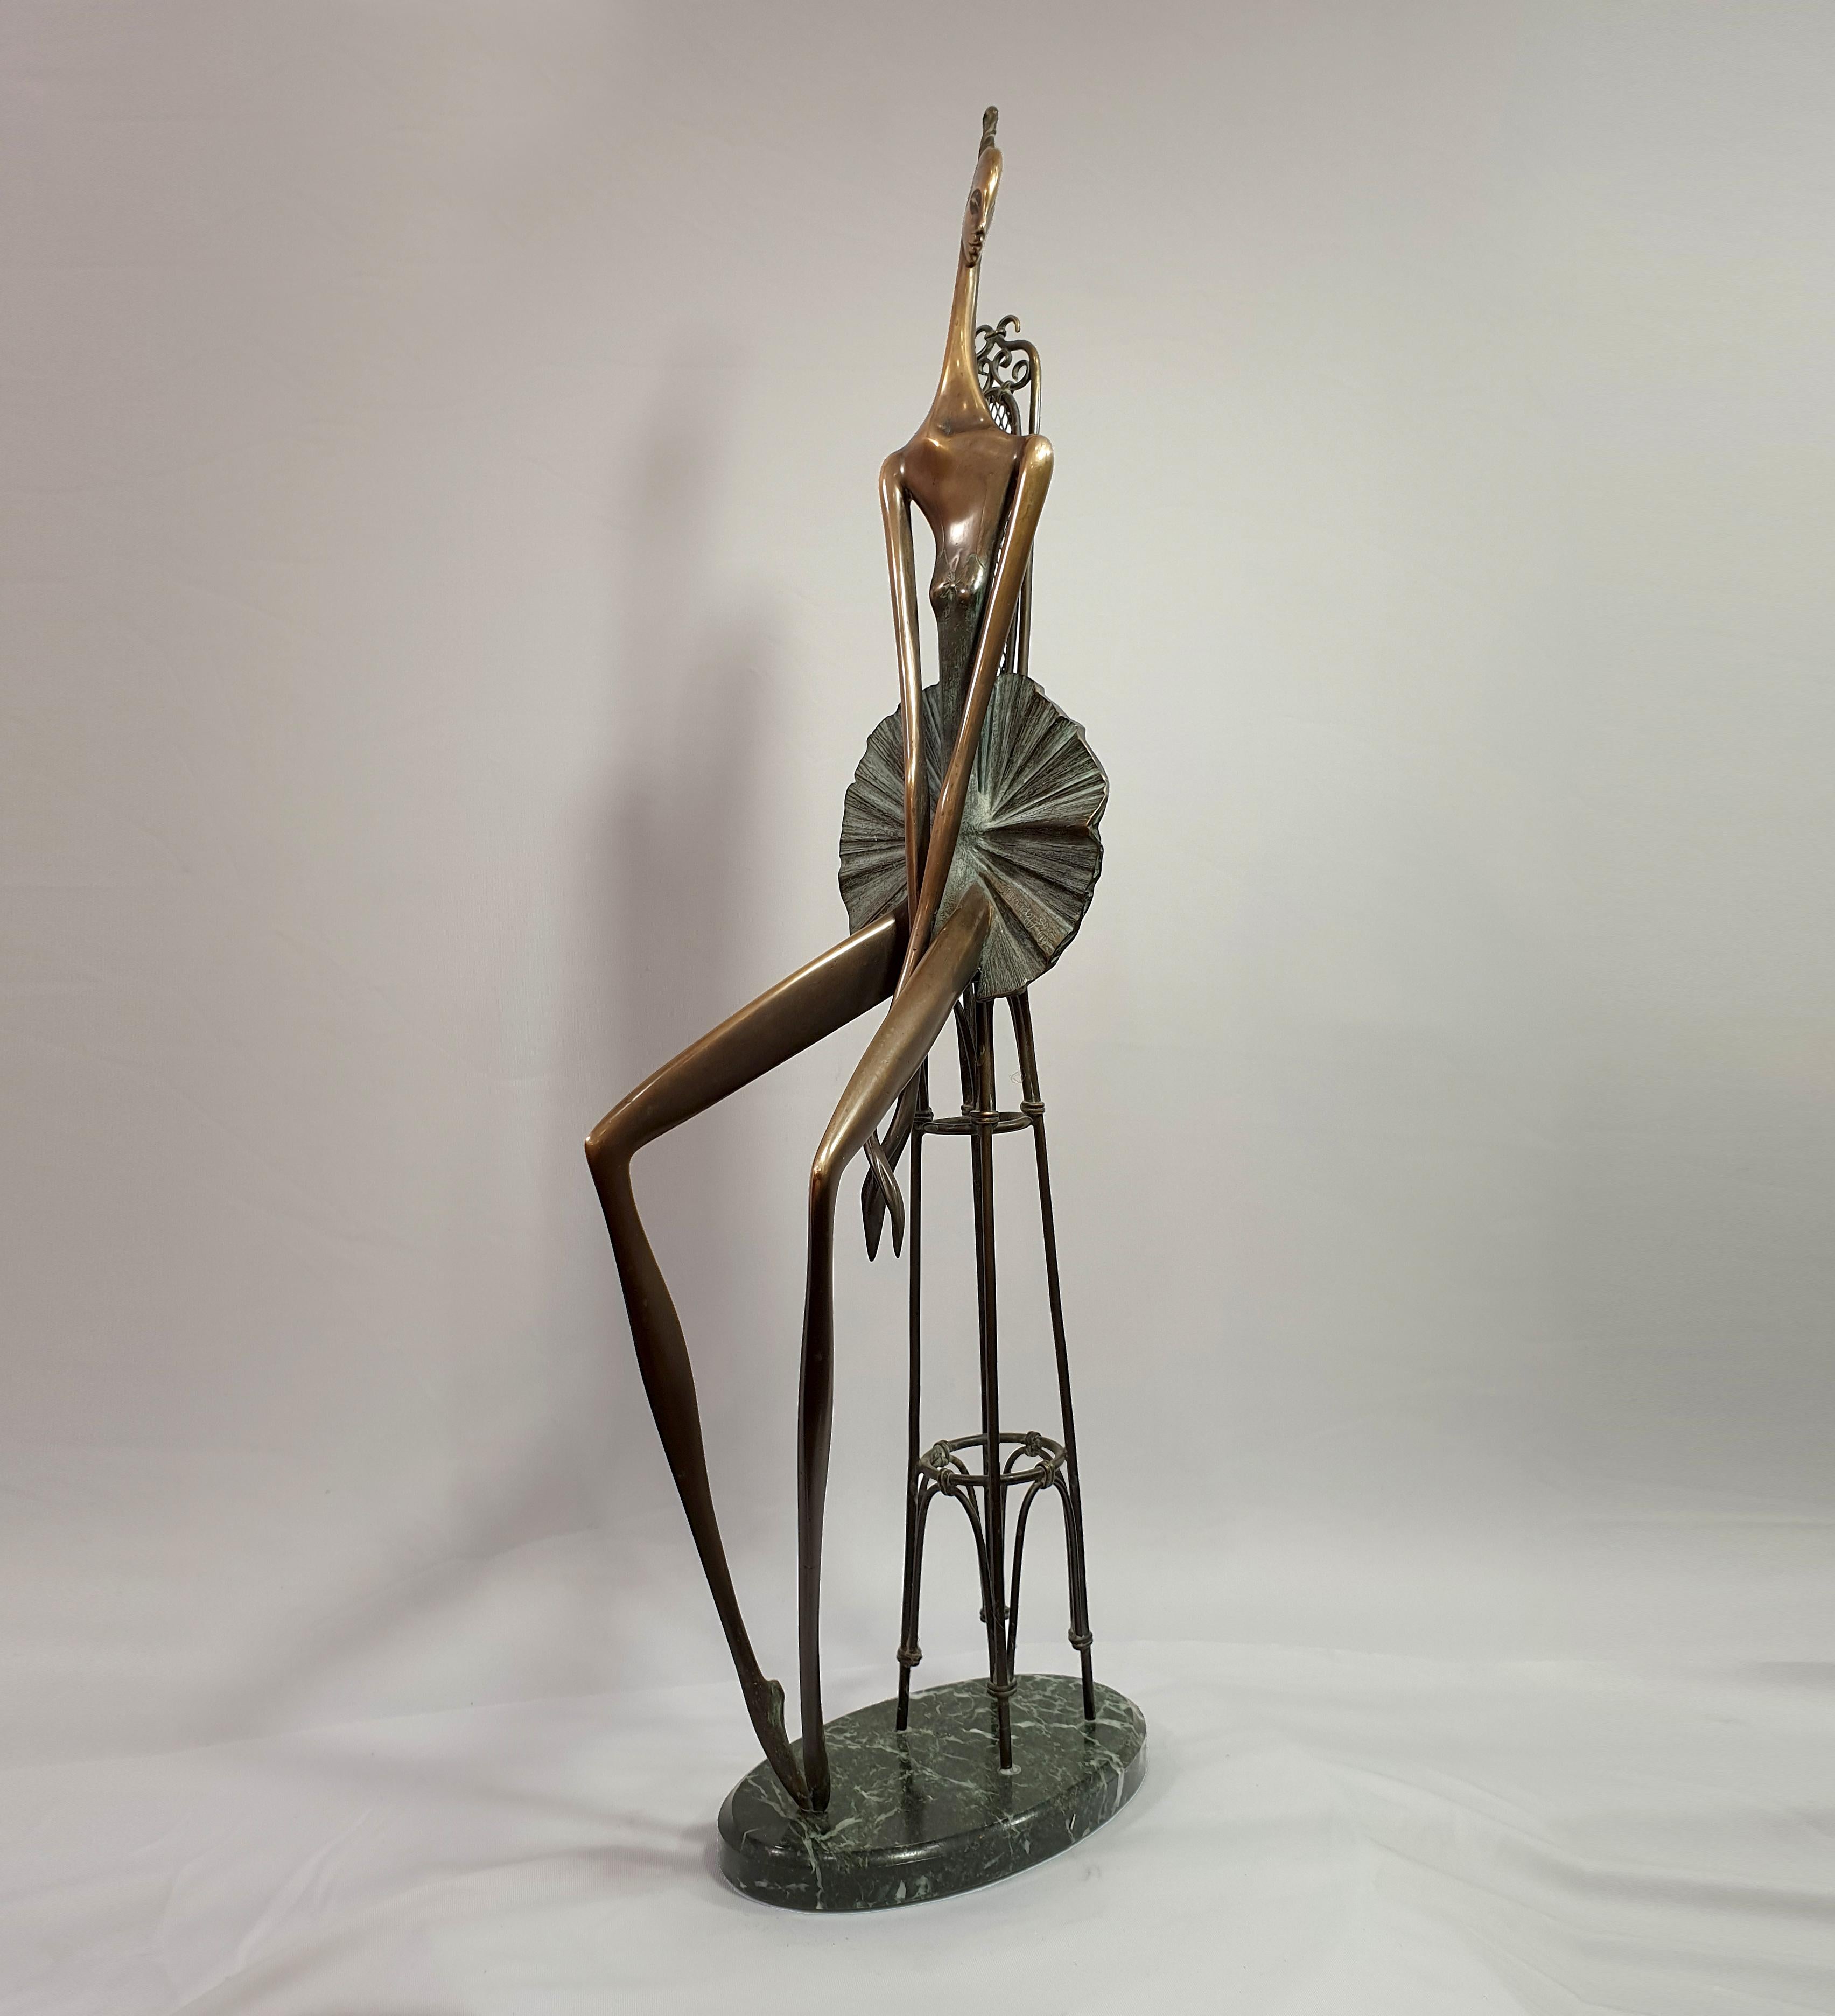 Ballerina auf einem Barockstuhl – Sculpture von Alex Radionov